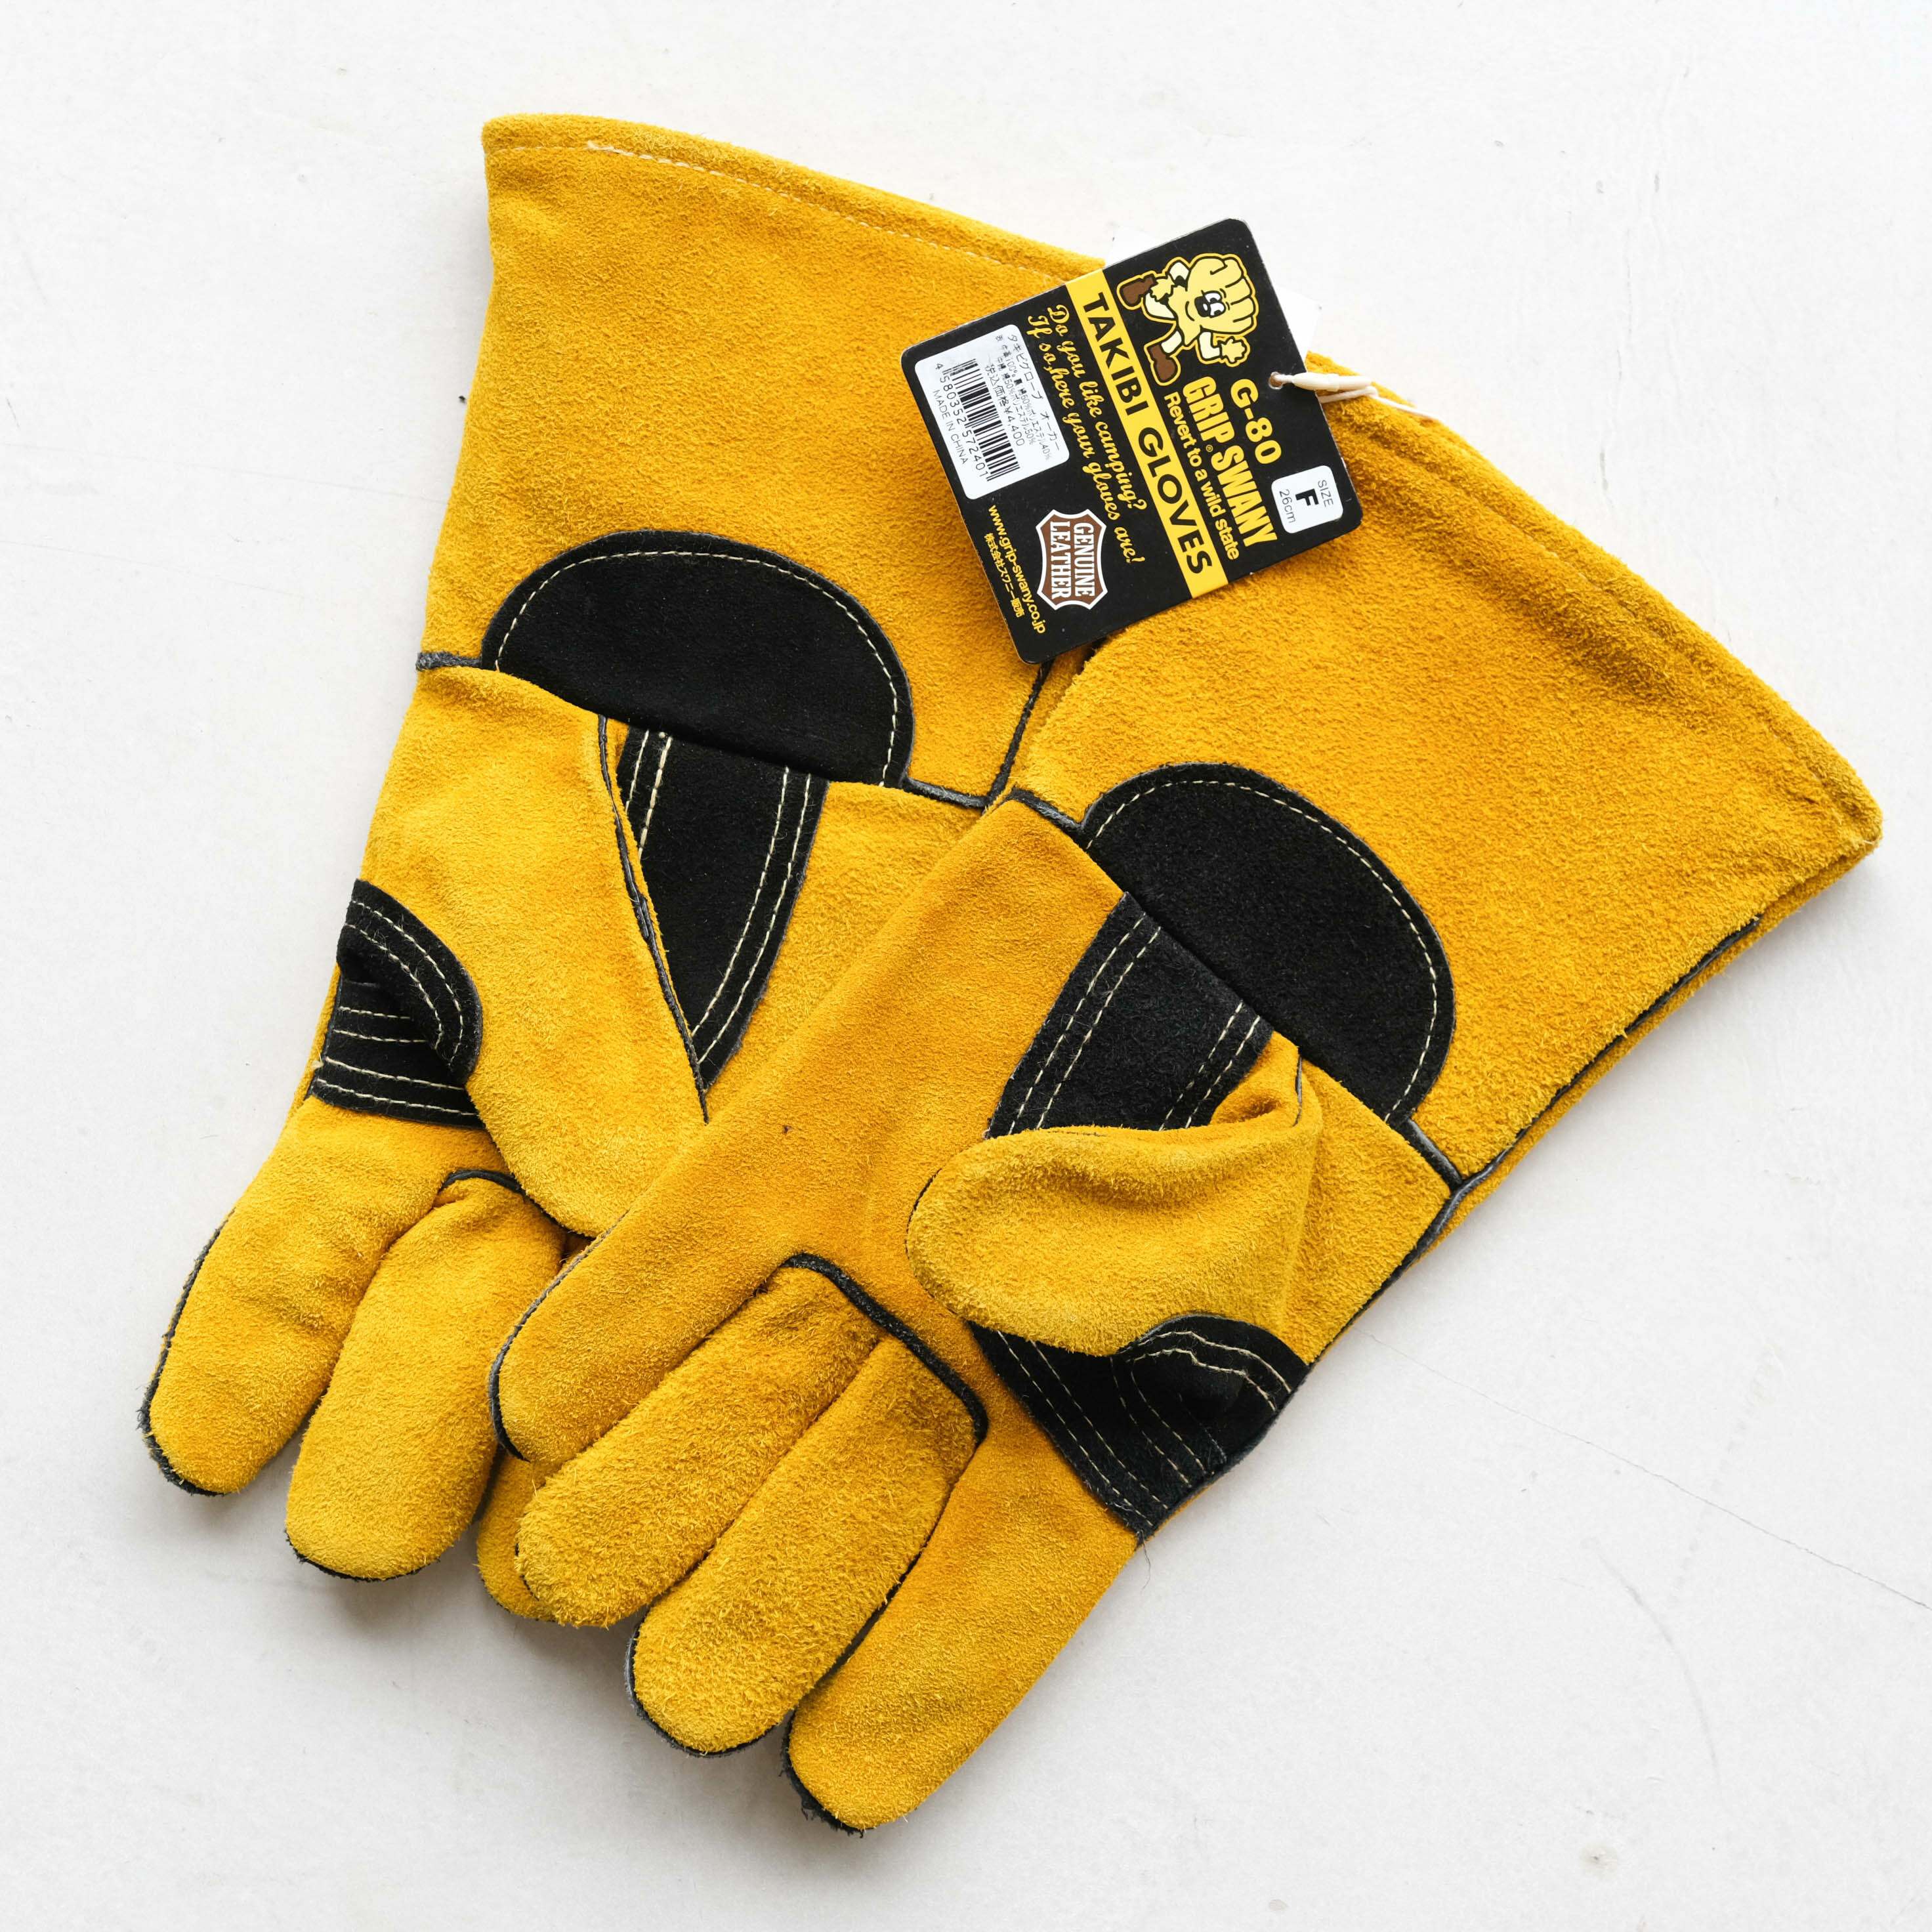 Grip Swany Takibi Glove